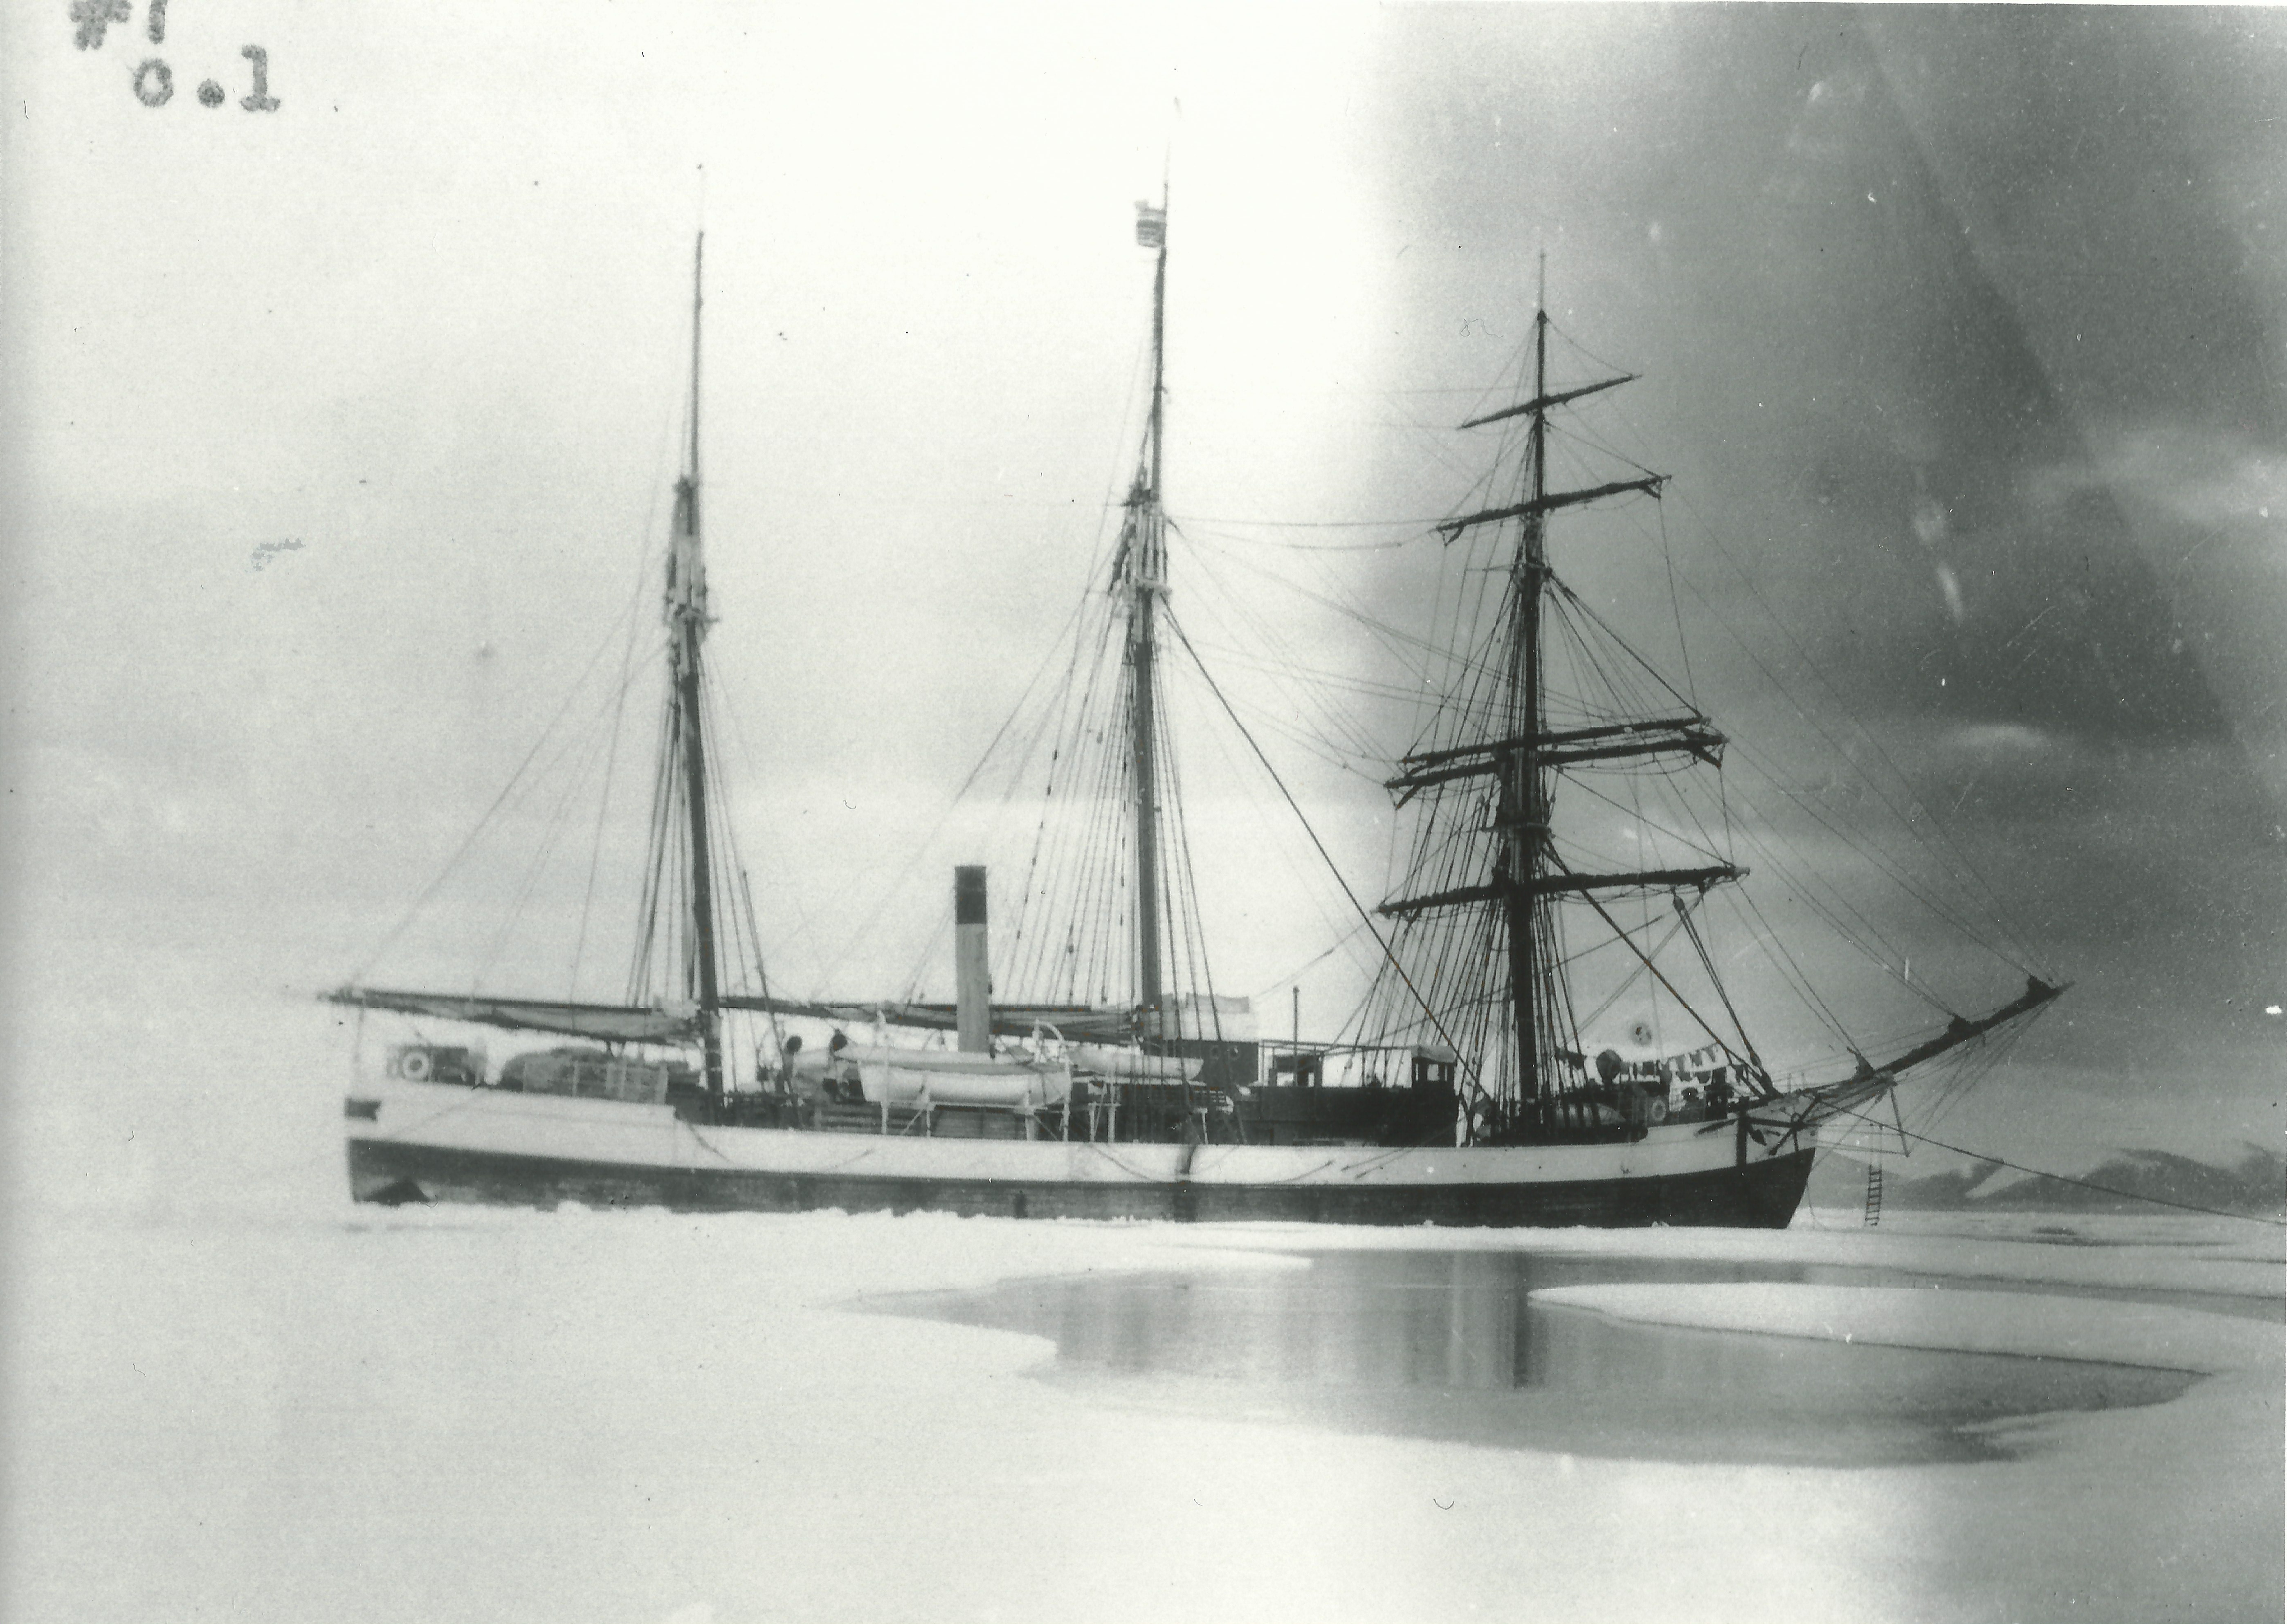 SS Arctic beneath photo